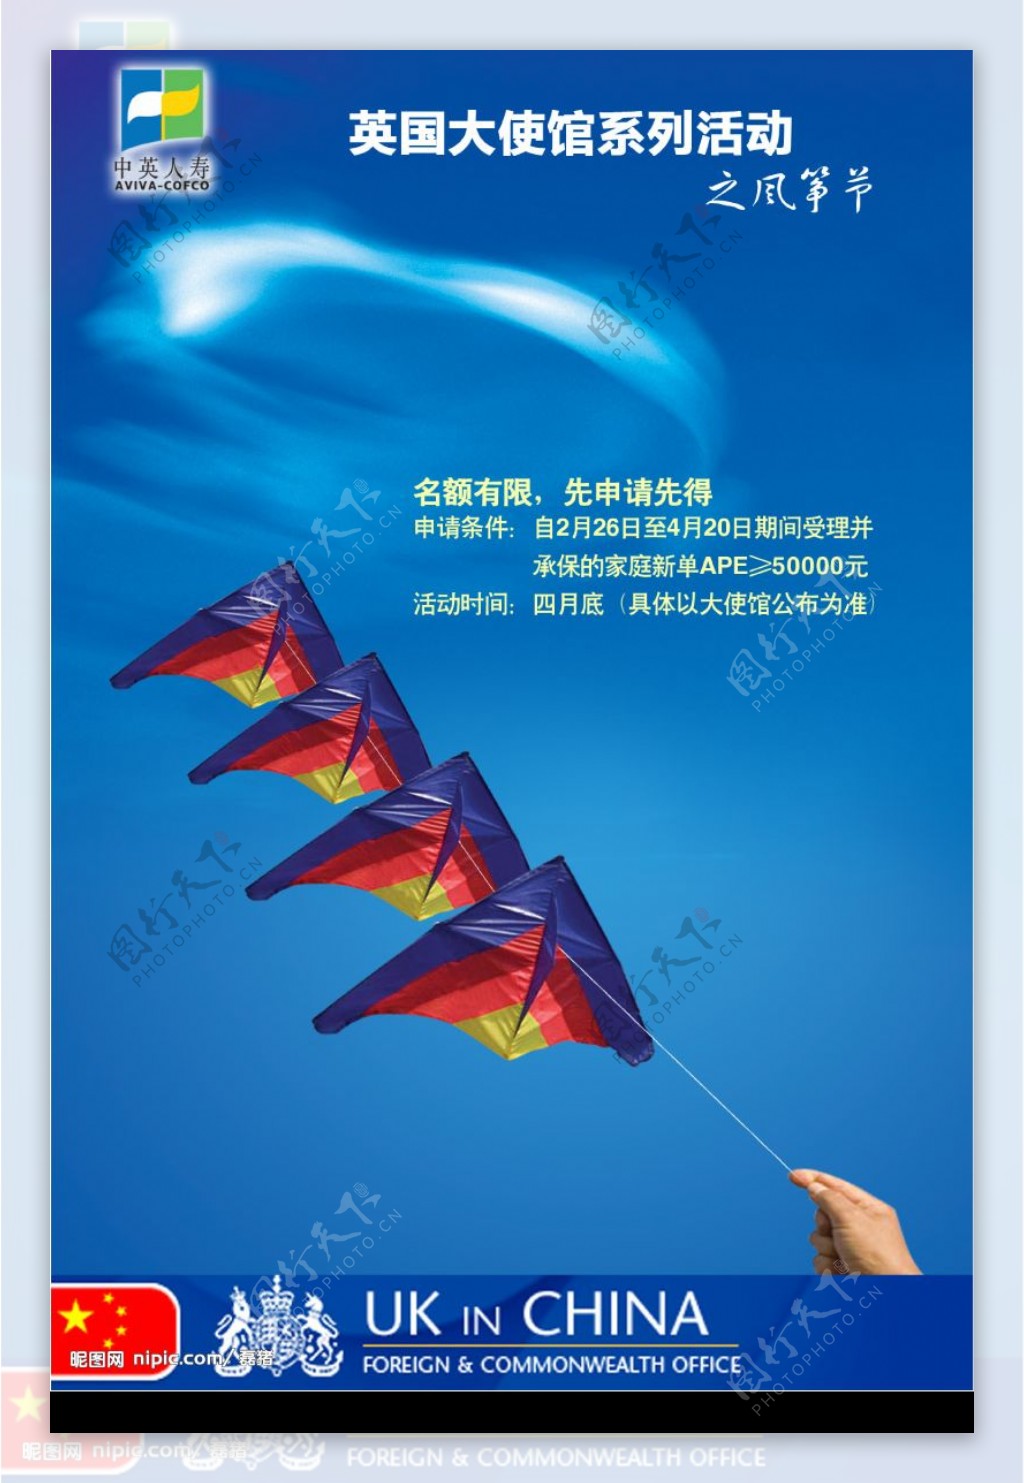 保险公司风筝节活动海报原创图片